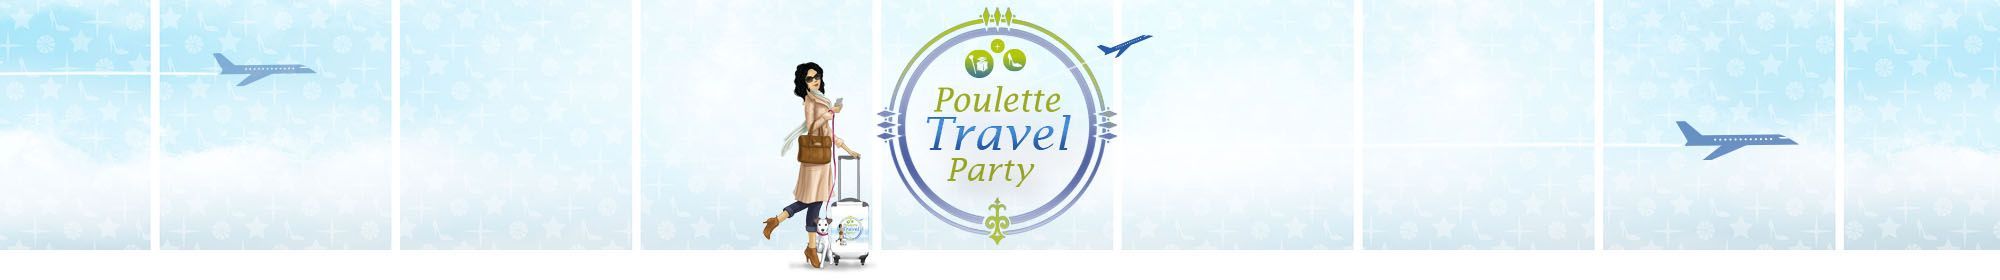 Poulette Travel Party